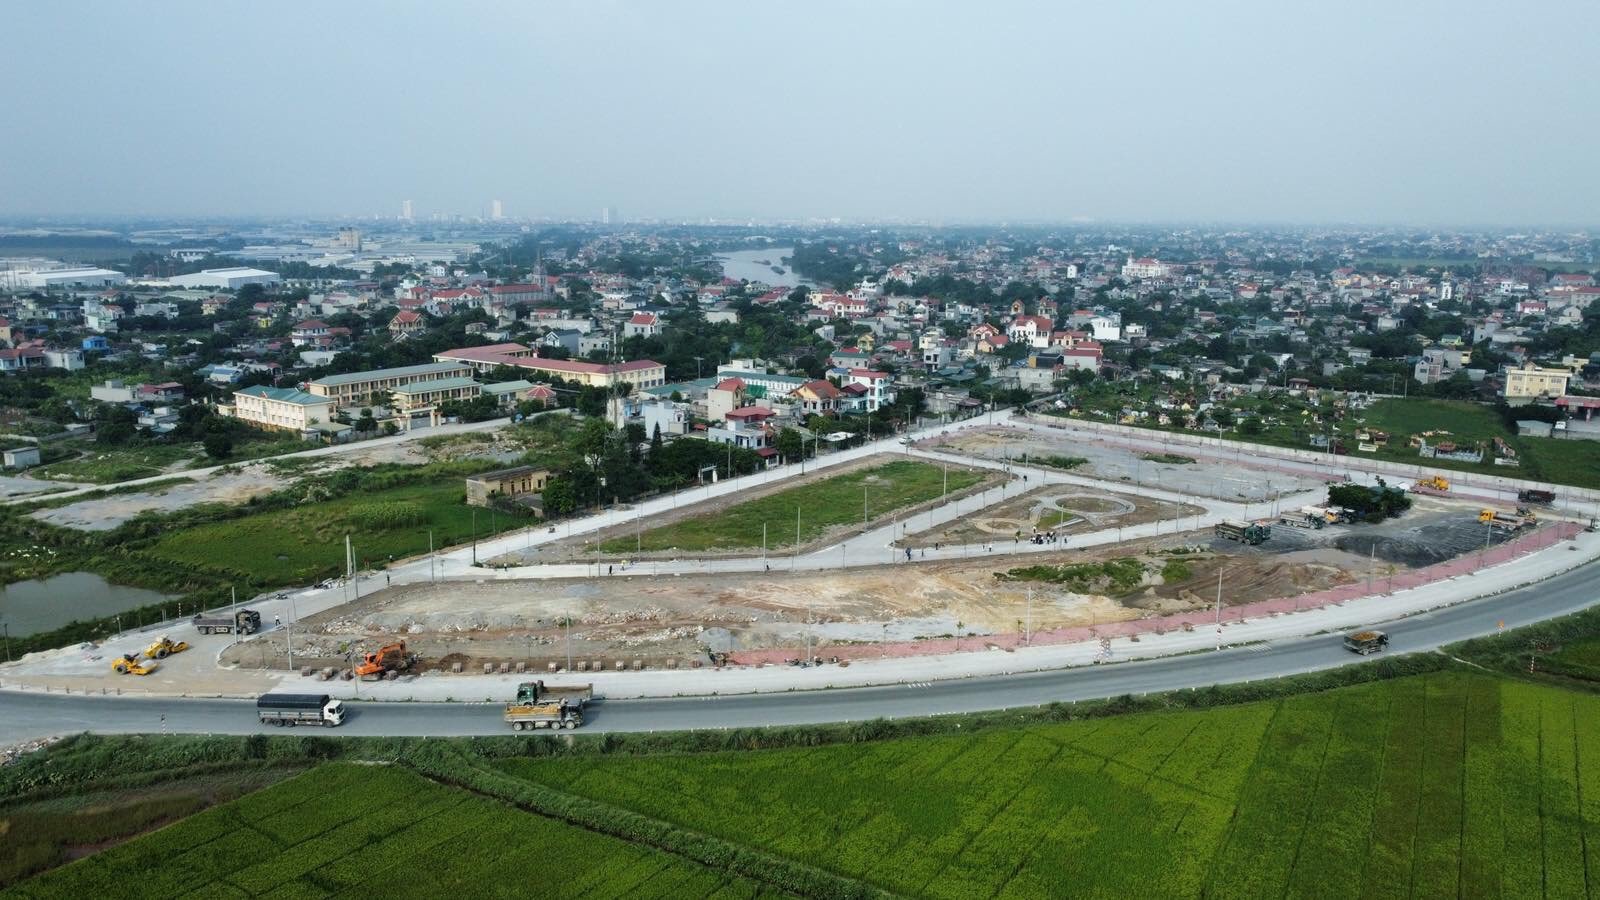 Ra hàng dự án đất nền 1/500 Thanh Liêm Hà Nam. Giá đầu tư chỉ từ 1,3 tỷ. Nằm ở lõi thủ phủ KCN 4